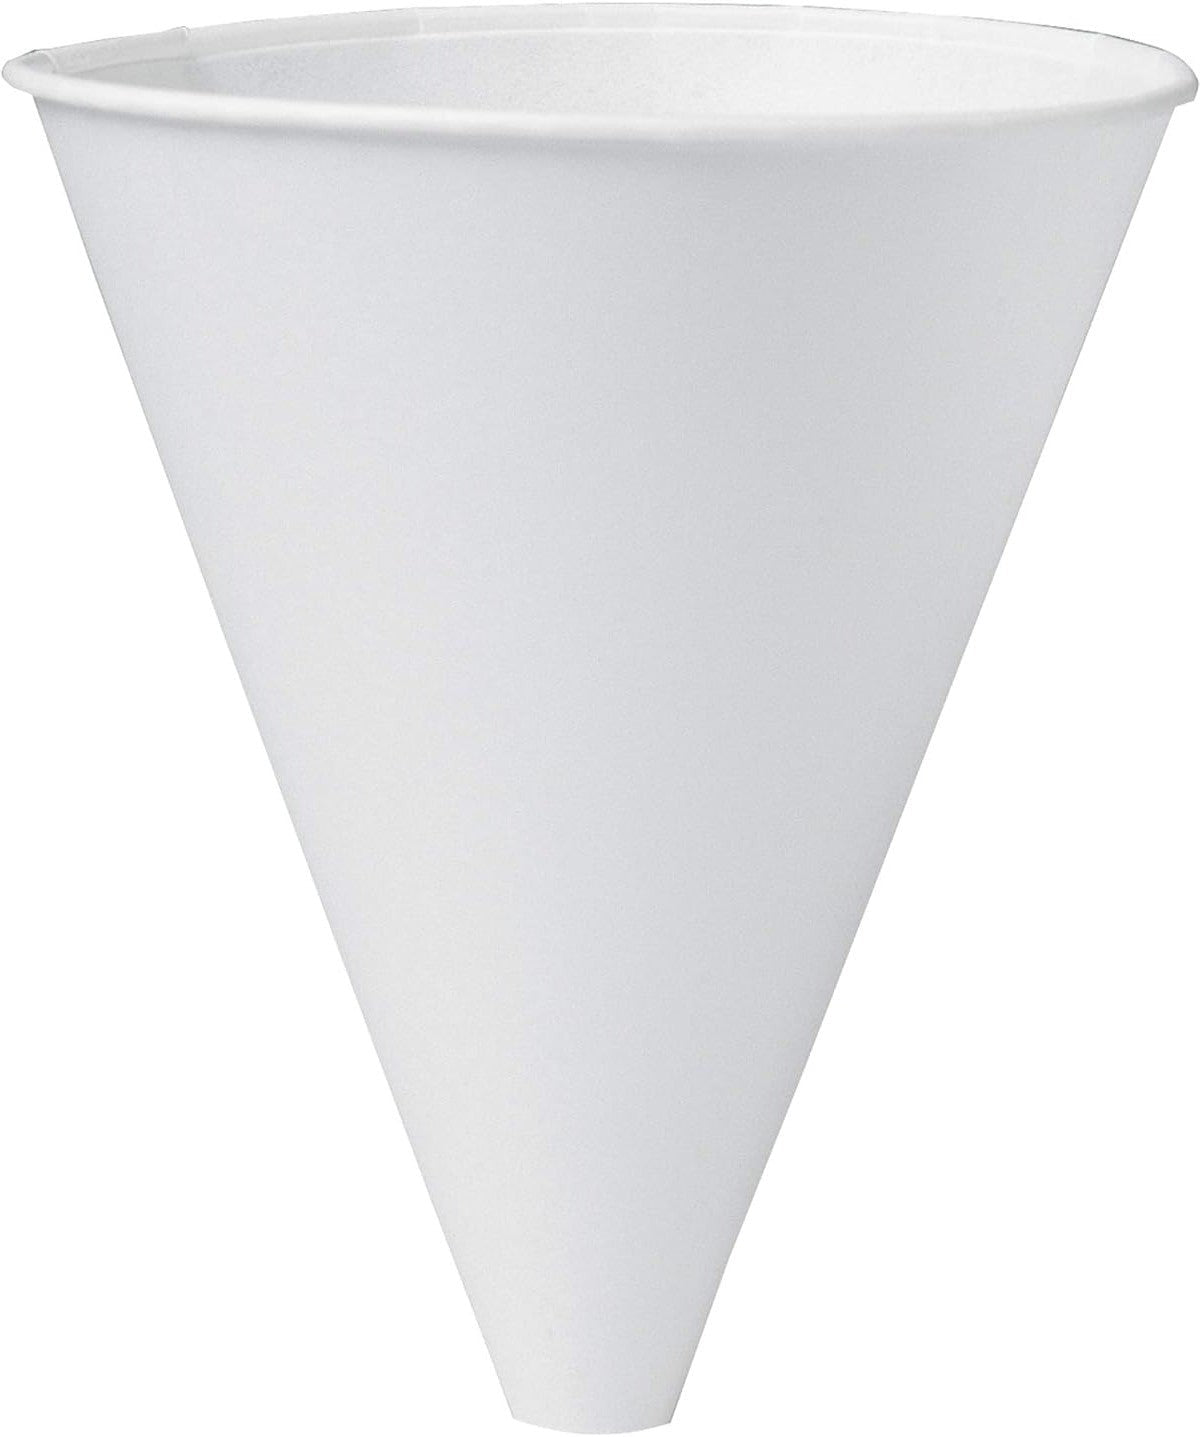 Dart Container - Bare Solo Eco-Forward 10 oz Cone Paper Cold Cups, 1000/cs - 10BF-2050